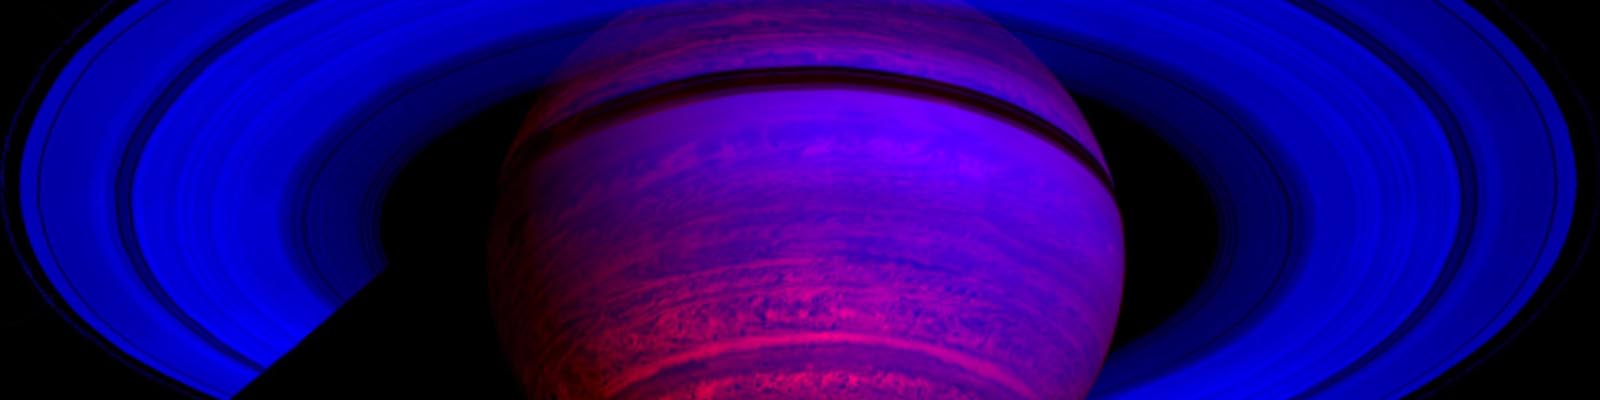 Saturne vue en infrarouge par la sonde Cassini